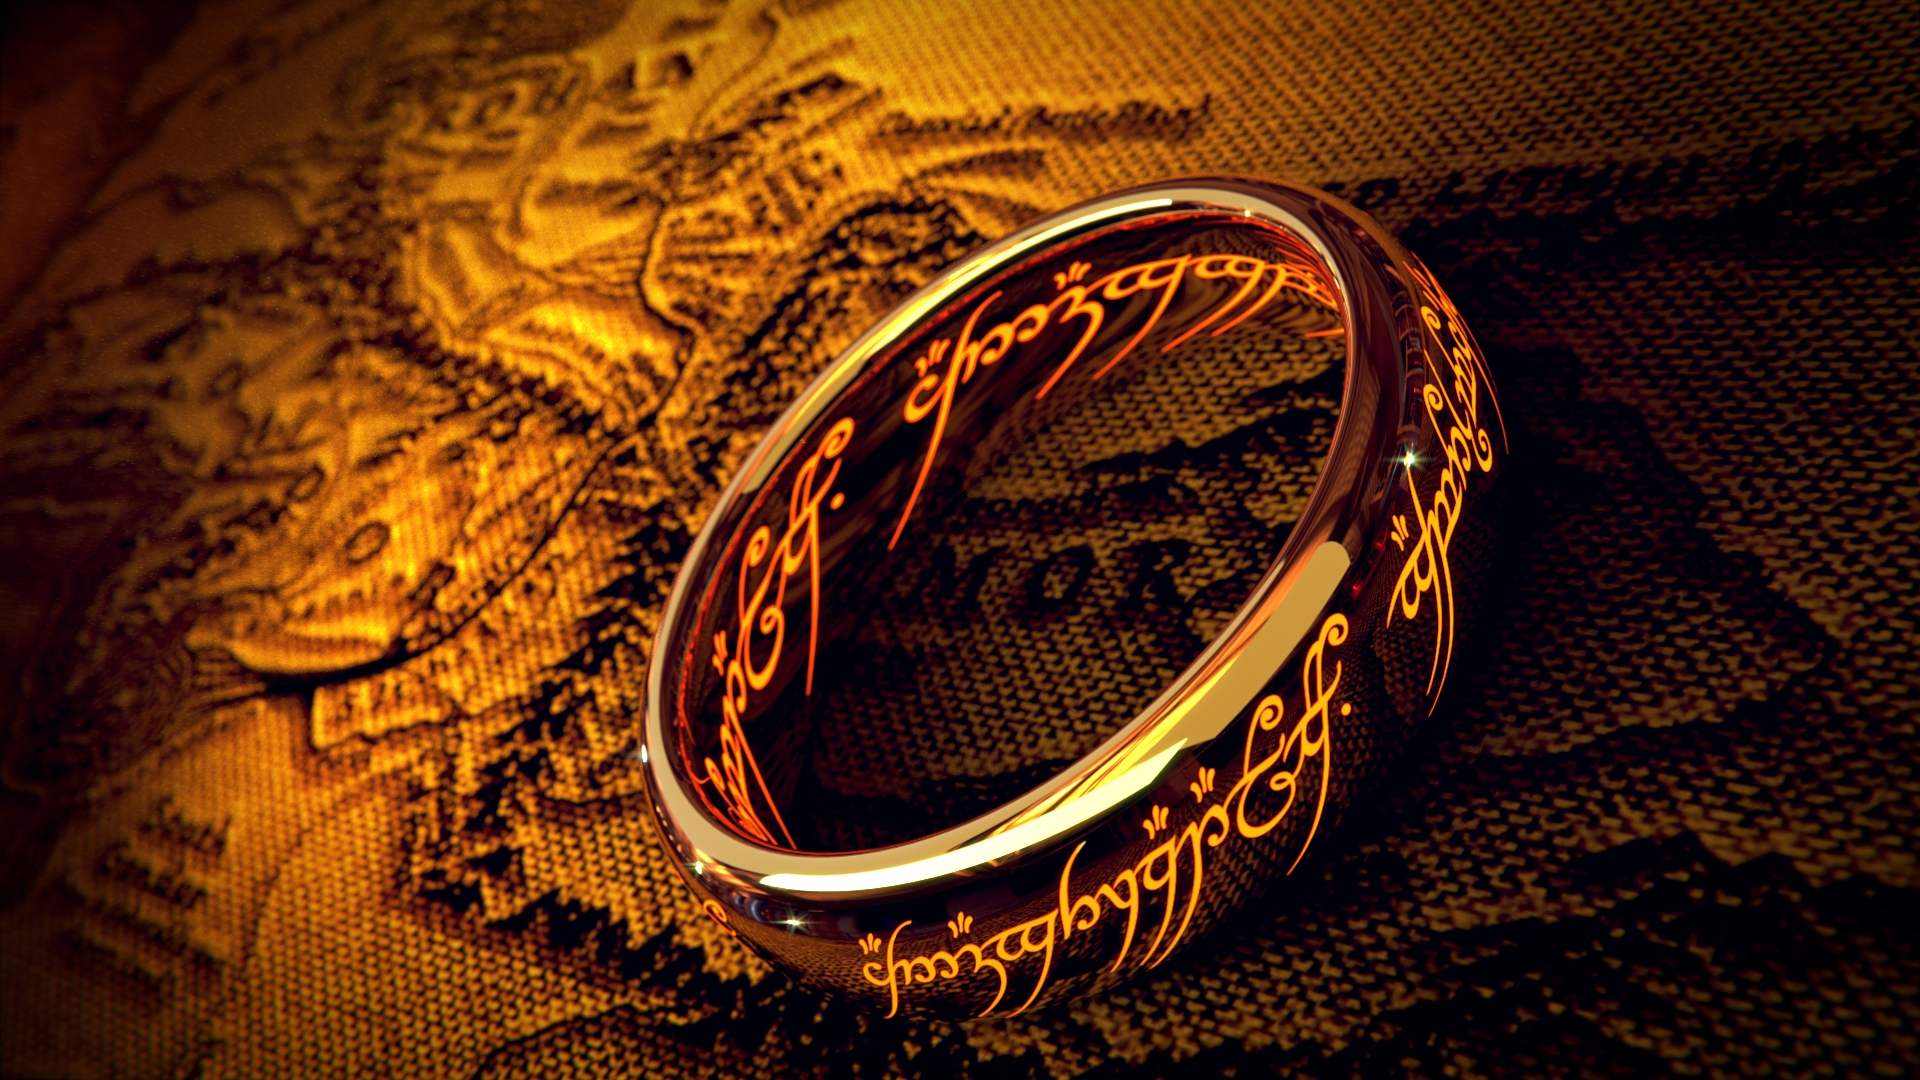 Властелин колец главы. Кольцо всевластия Властелин колец. Кольцо всевластия Фродо. Толкиен Властелин колец кольцо.